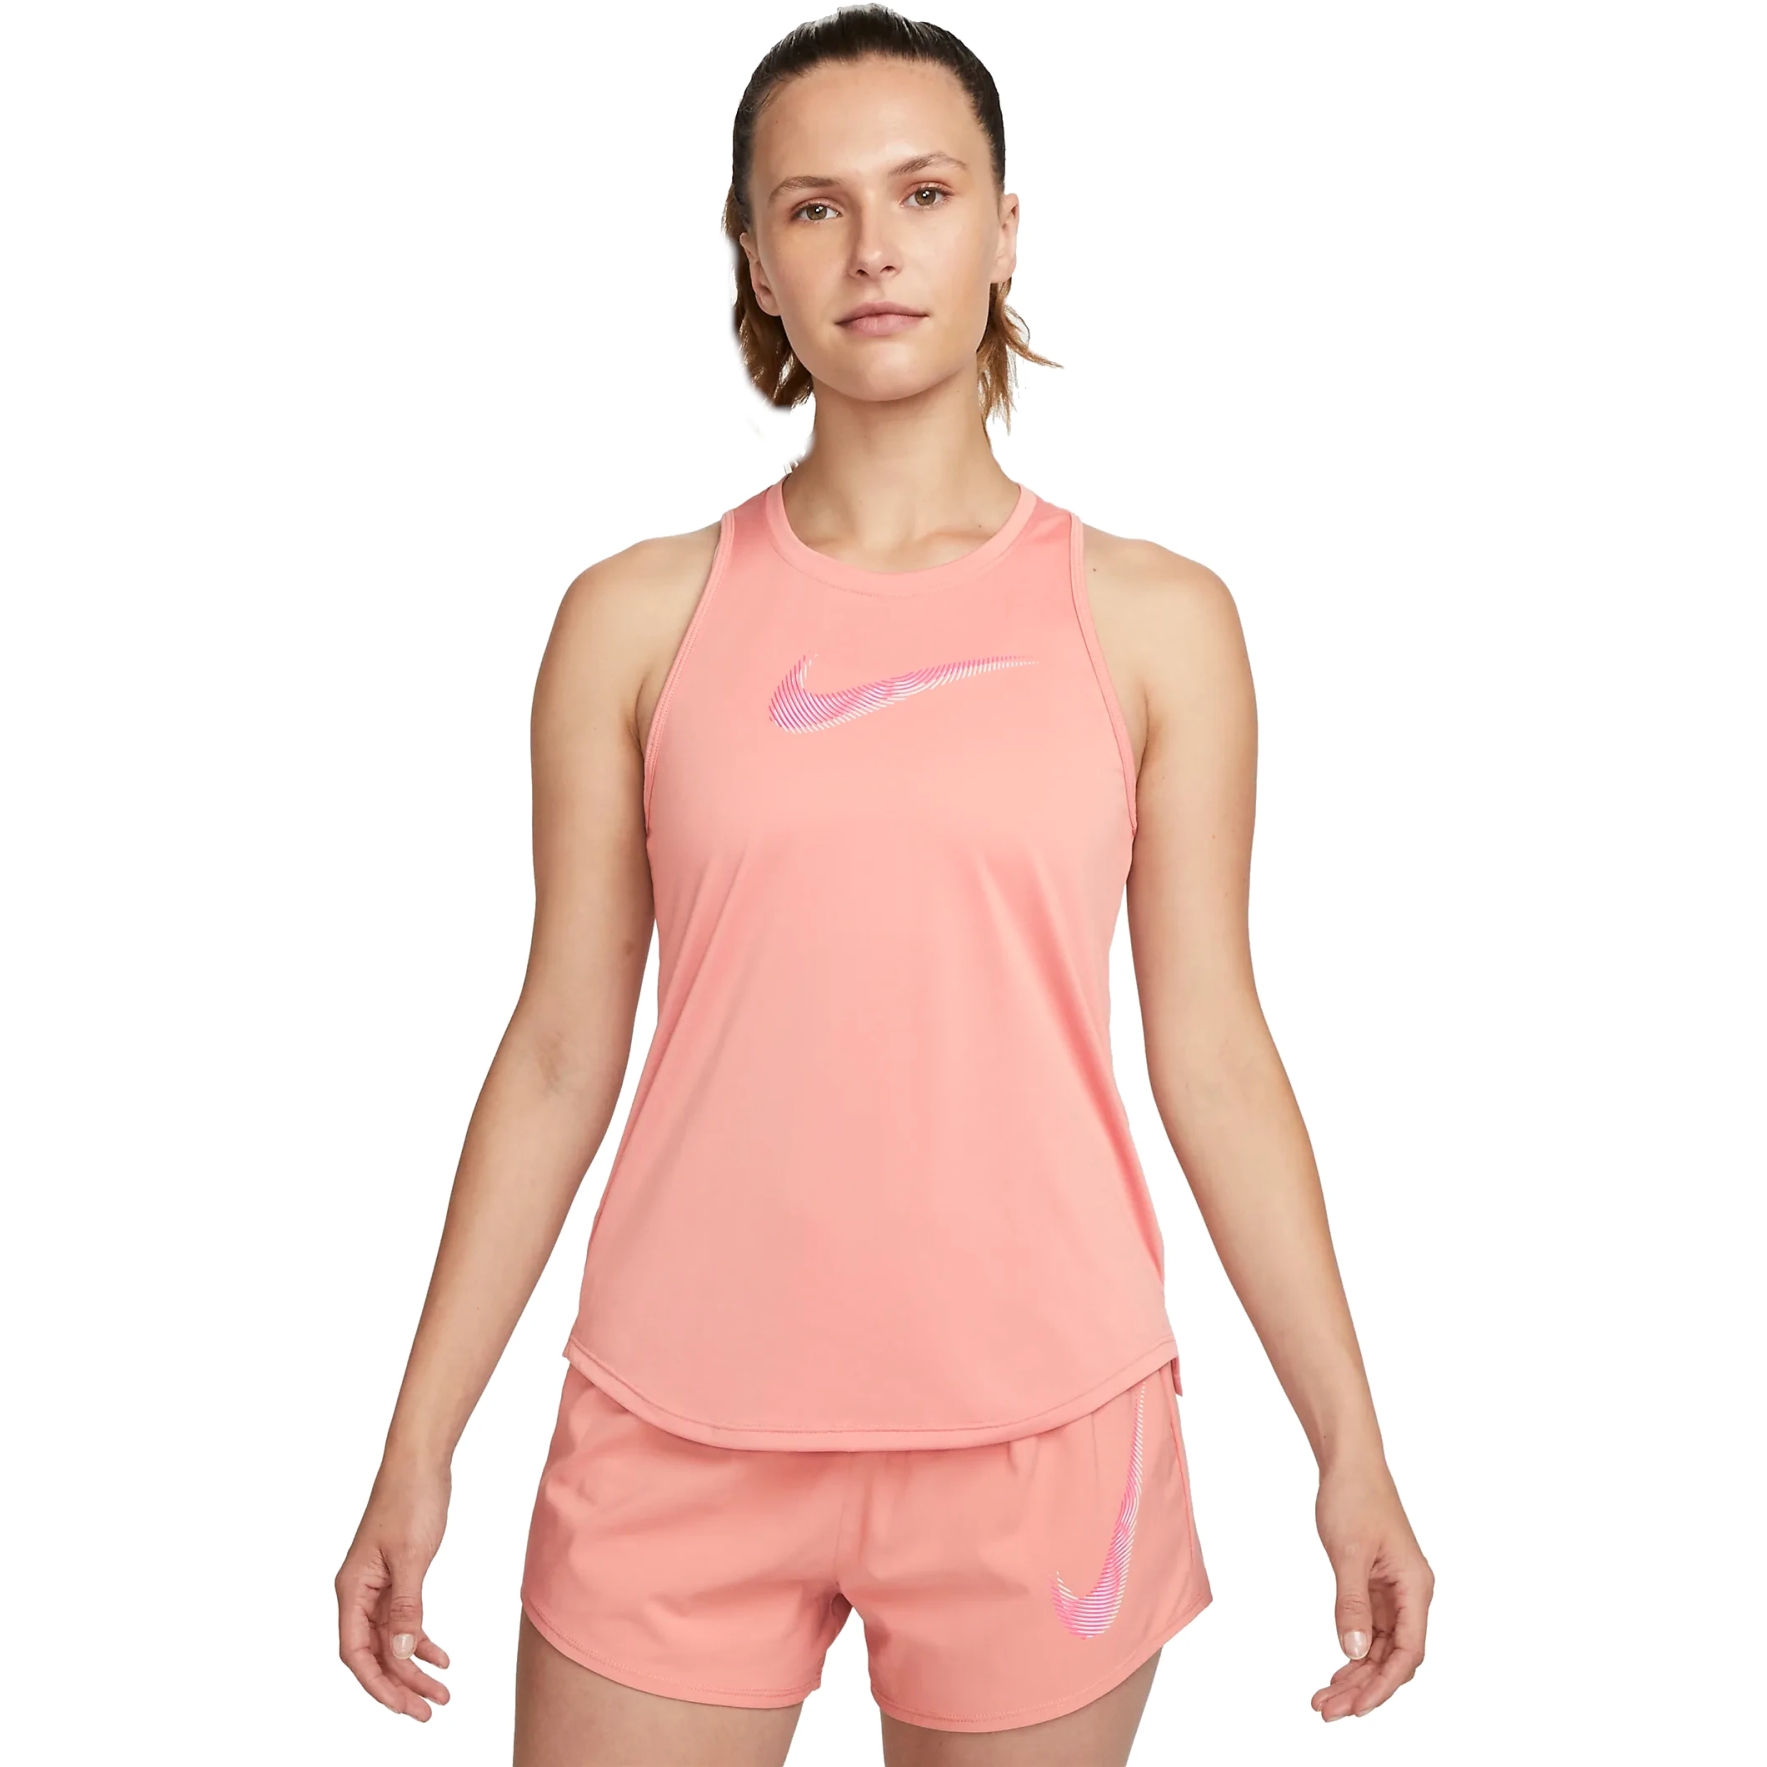 Produktbild von Nike Dri-FIT Swoosh Damen-Lauf-Tanktop - red stardust/fierce pink FB4914-618